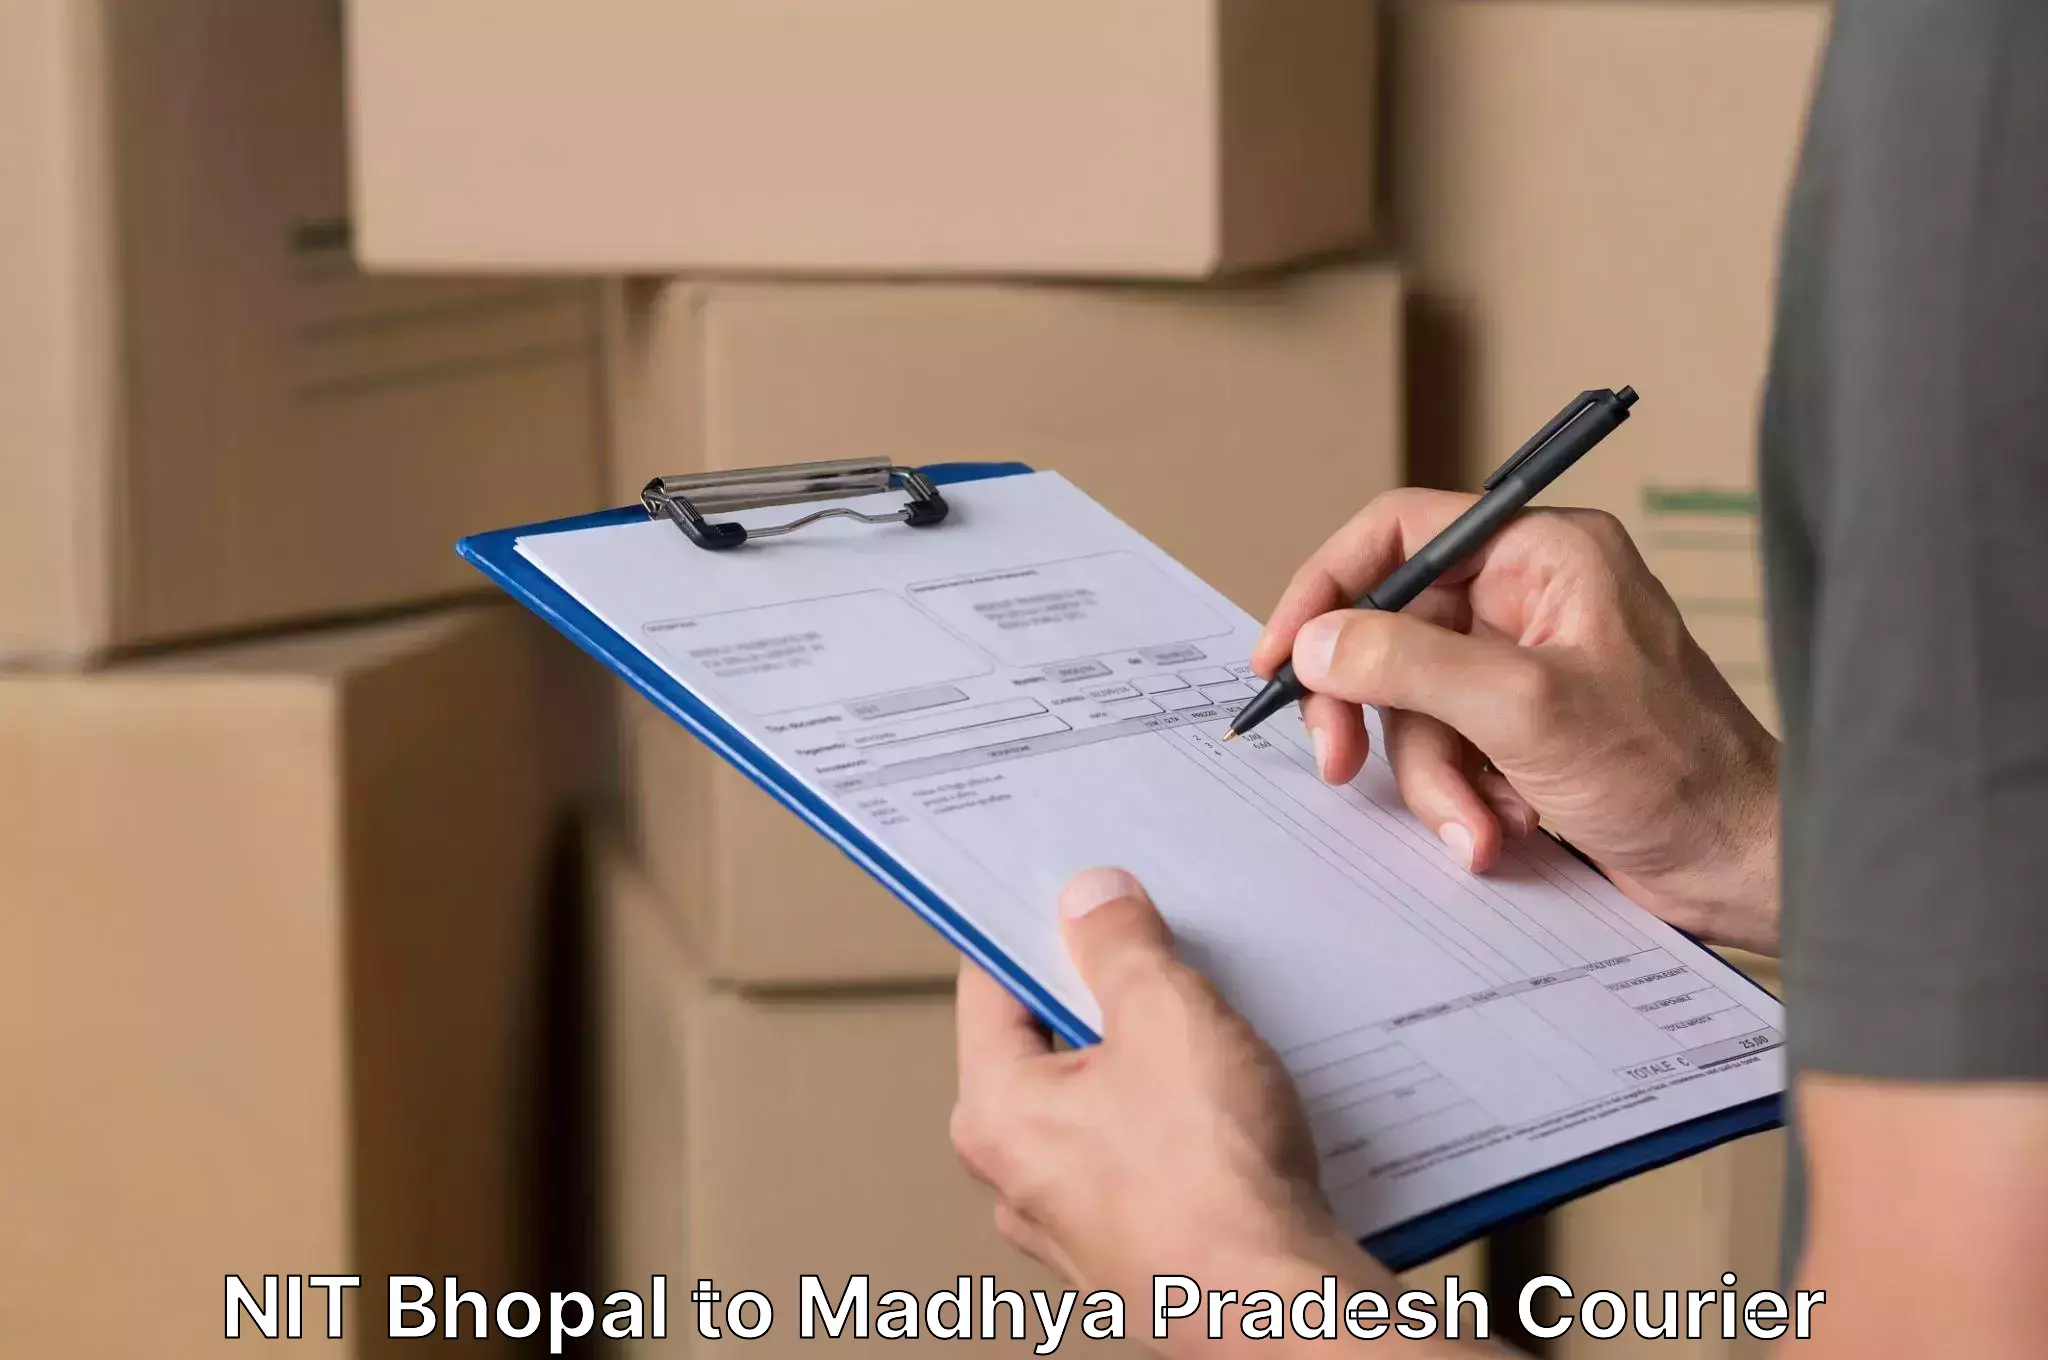 Door-to-door relocation services NIT Bhopal to Pandhurna